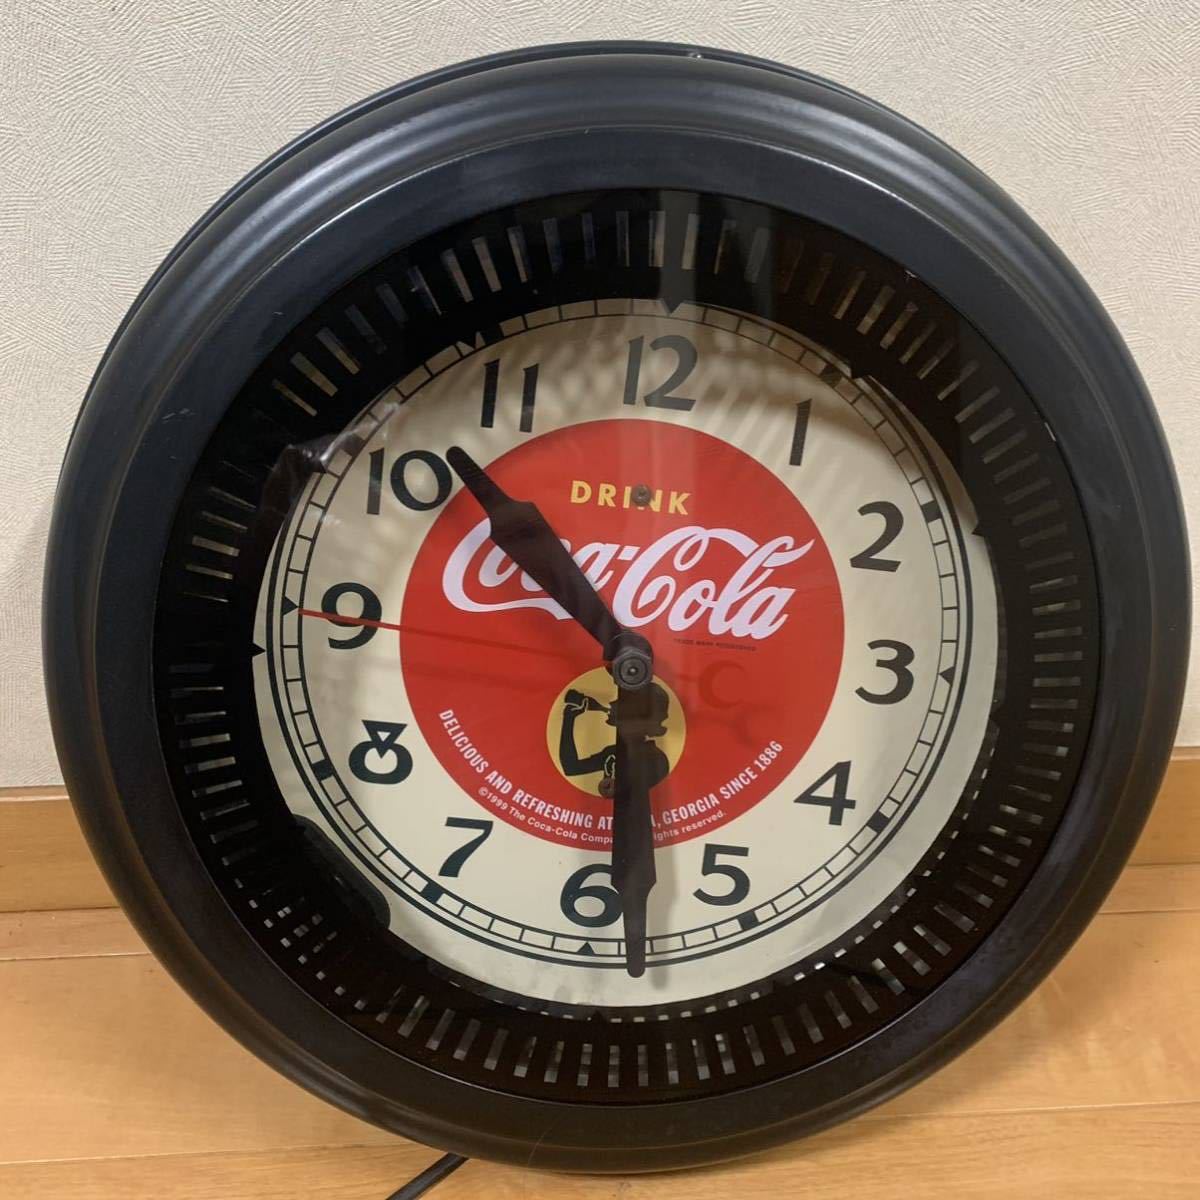 コカコーラ ネオン 時計の値段と価格推移は 31件の売買情報を集計したコカコーラ ネオン 時計の価格や価値の推移データを公開